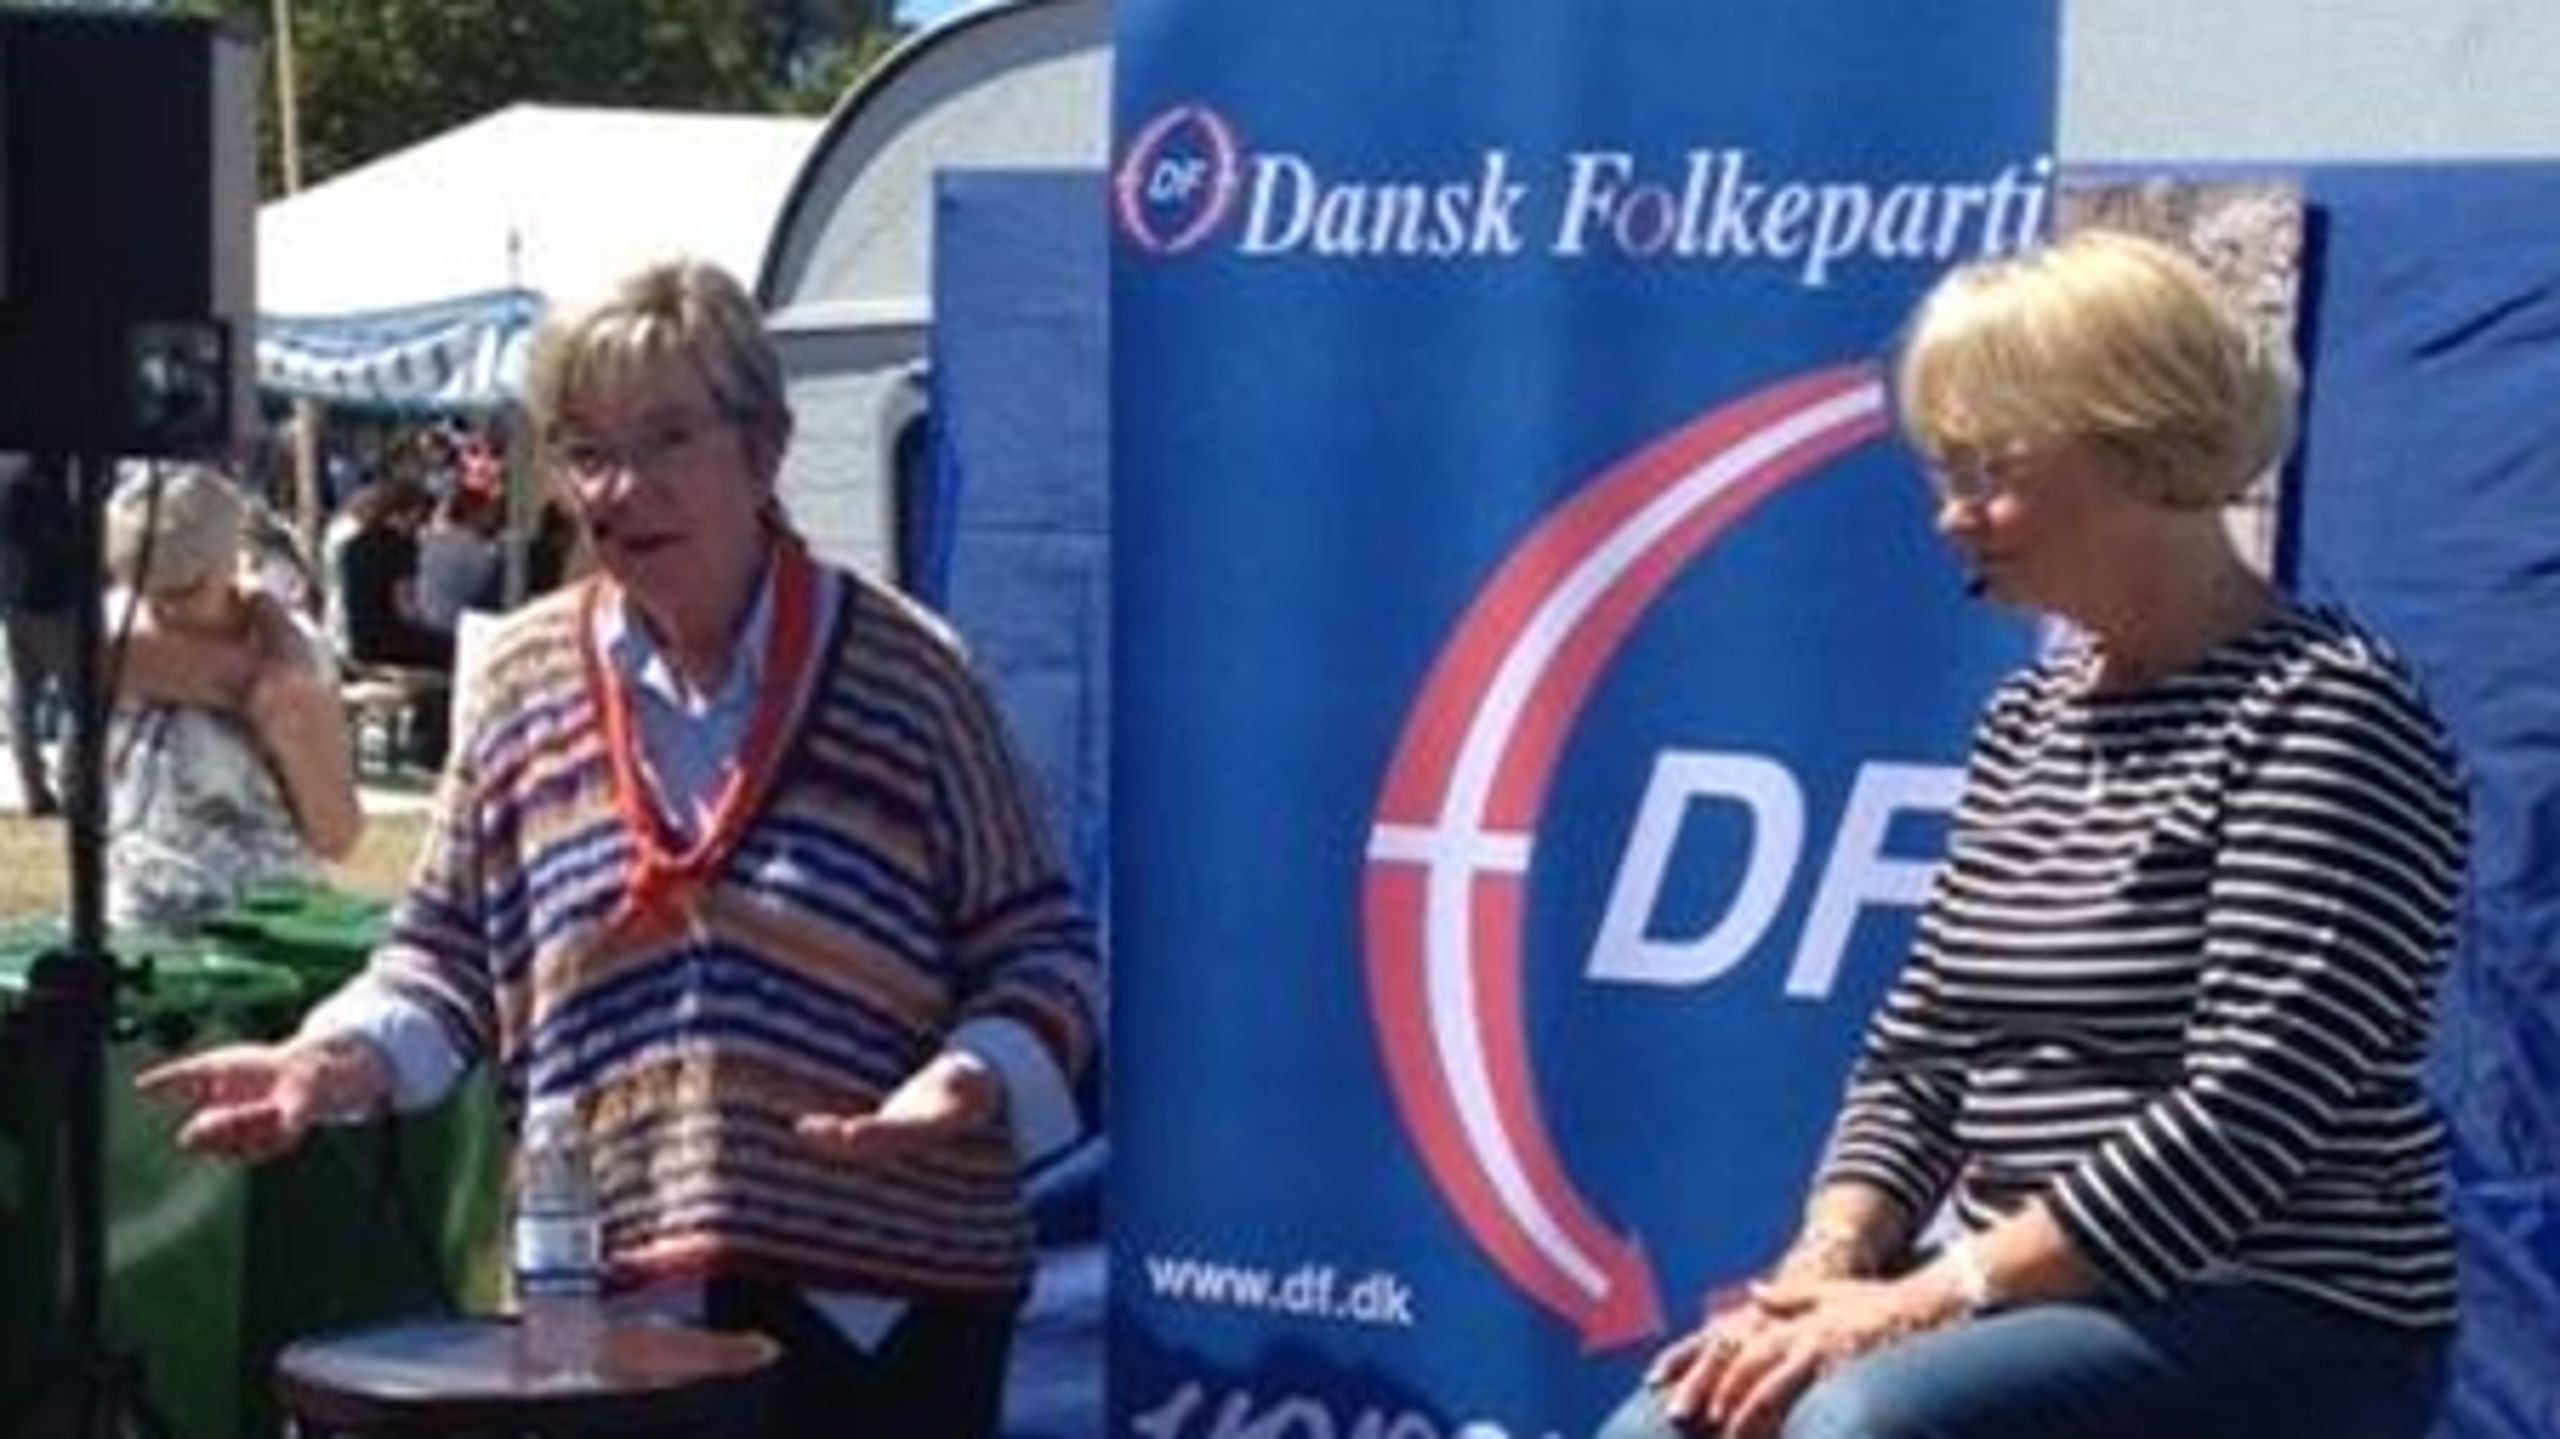 Kulturminister Marianne Jelved (R) debatterede kulturpolitik med Dansk Folkeparts Pia Kjærsgaard under sidste uges Folkemøde på Bornholm.